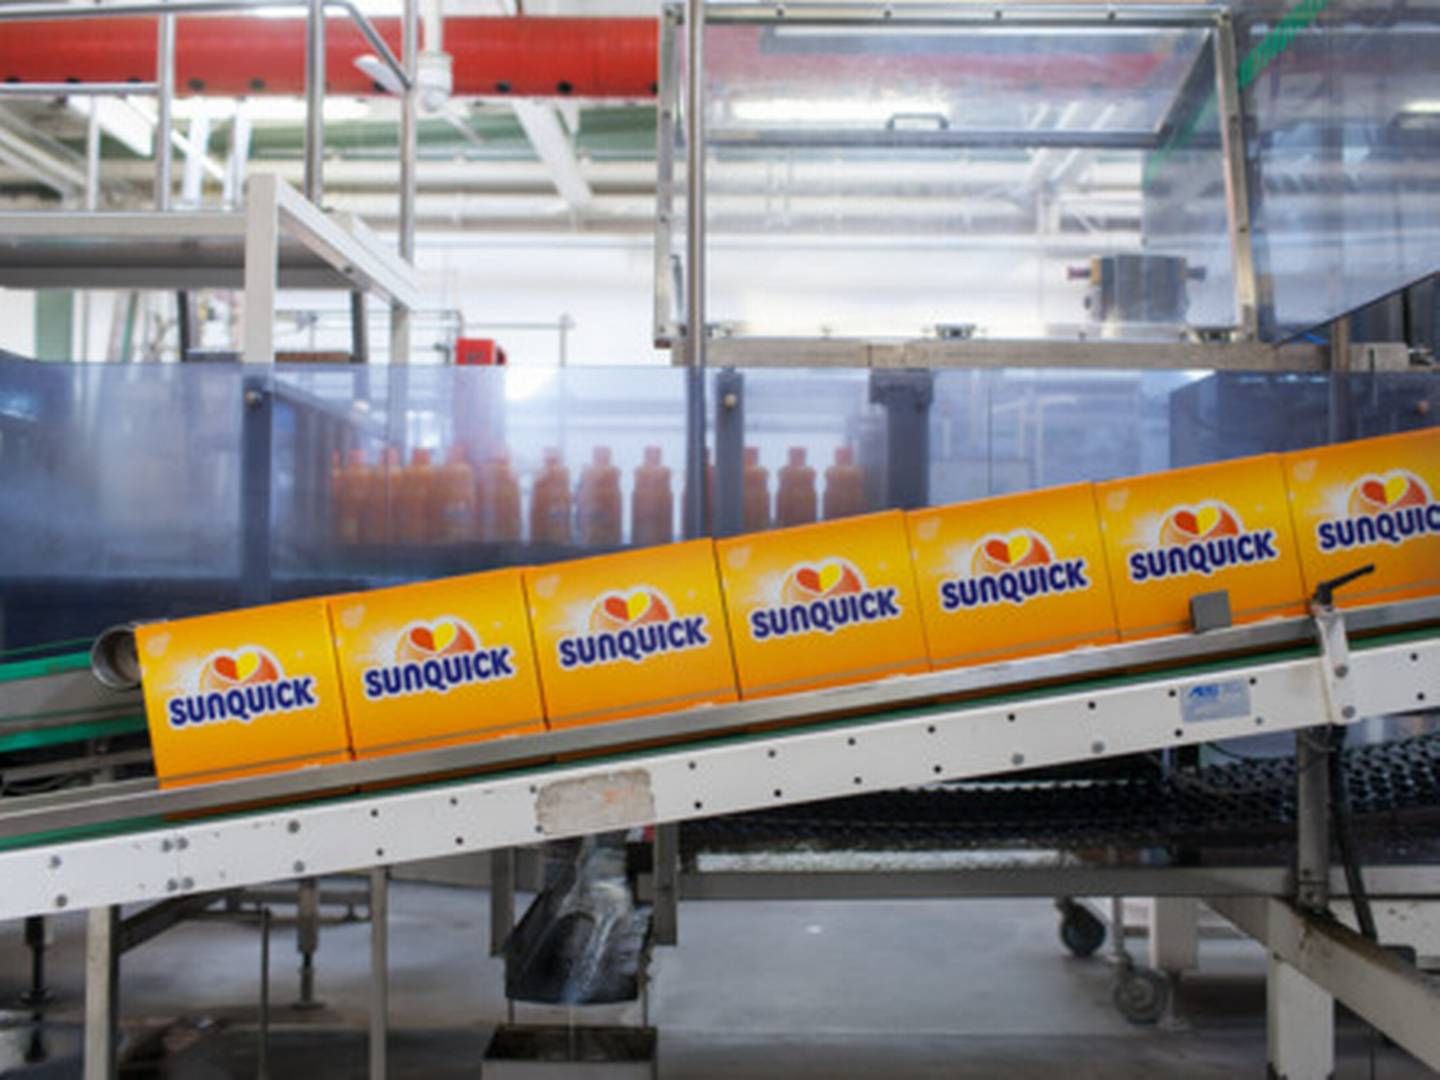 Co-Ros juicebrand Sunquick skal sendes ud til hele Bangladesh, lyder det fra virksomheden, der netop har åbnet ny fabrik med en stor lokal virksomhed. | Foto: Pr / Co-ro